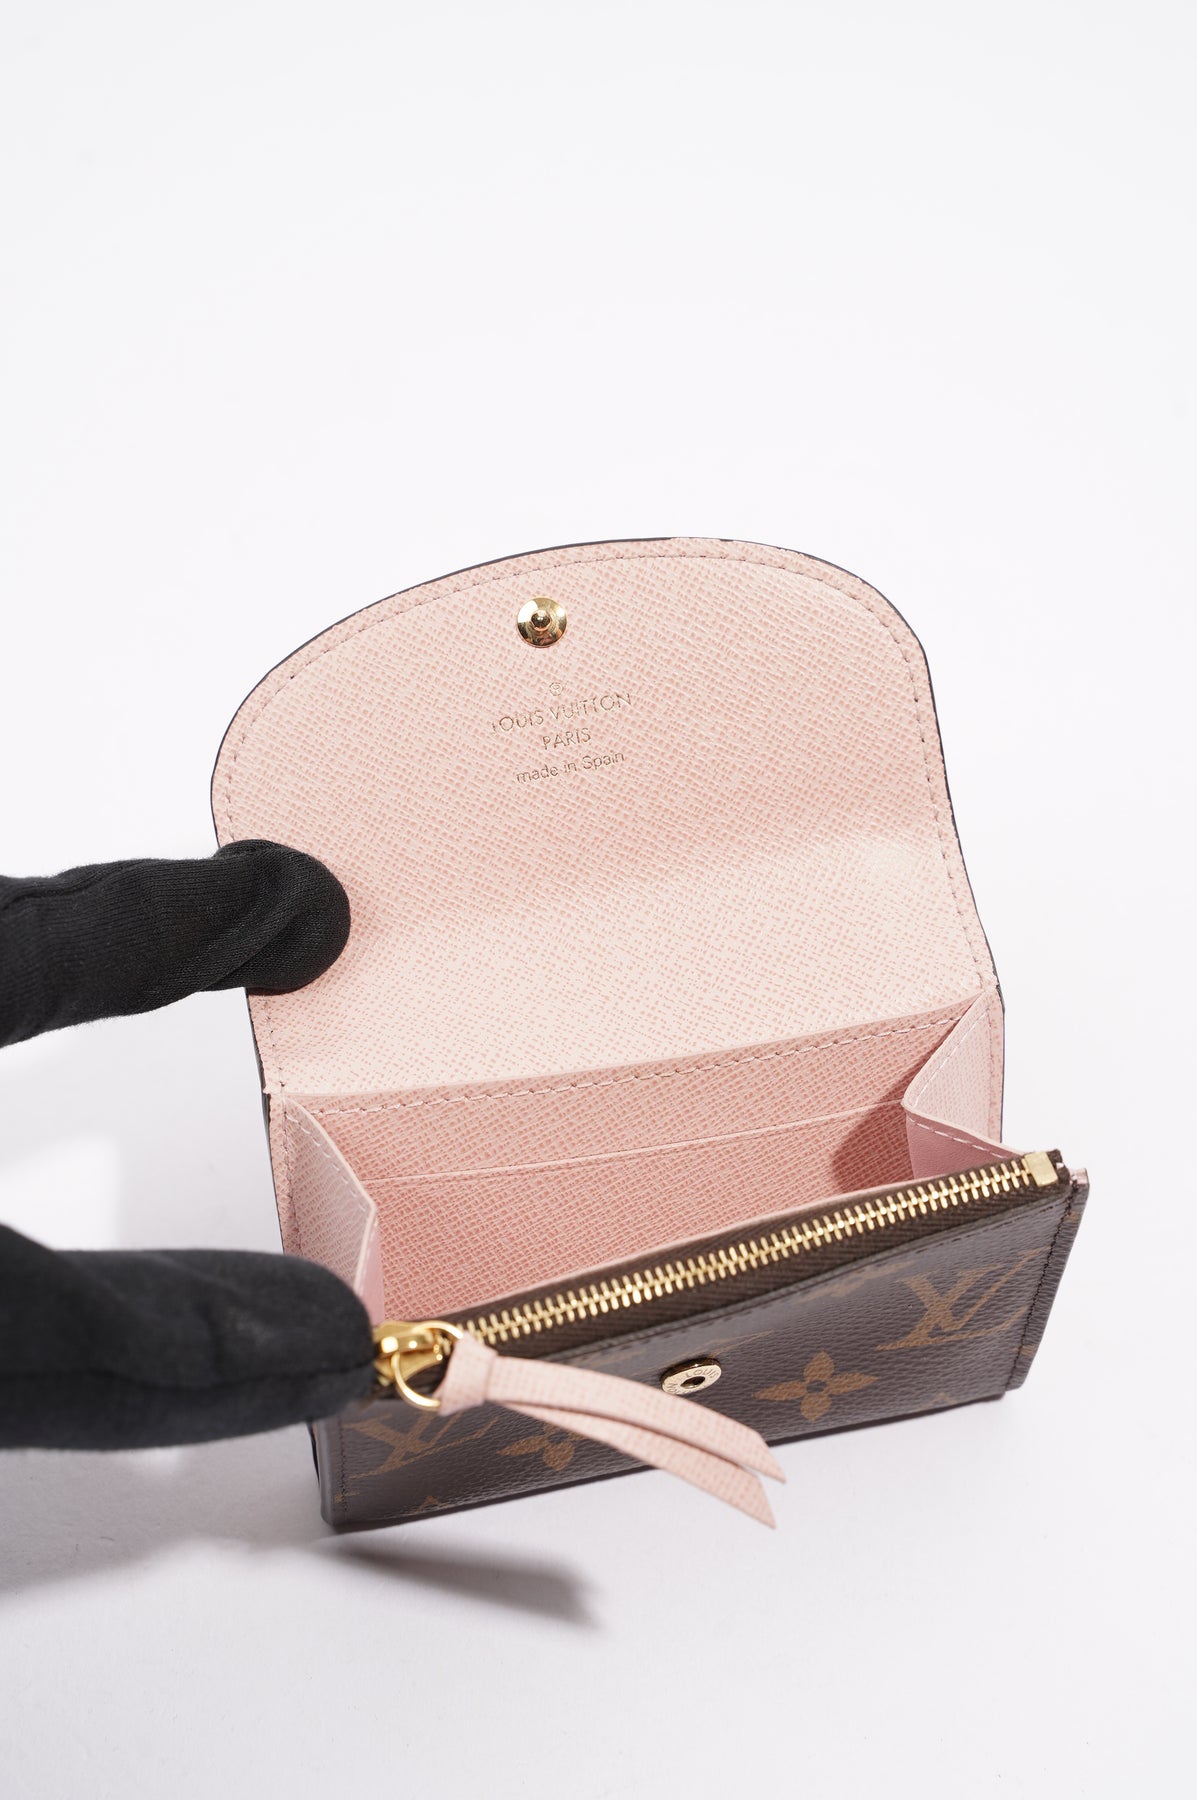 2021 Authentic Louis Vuitton Rosalie coin purse